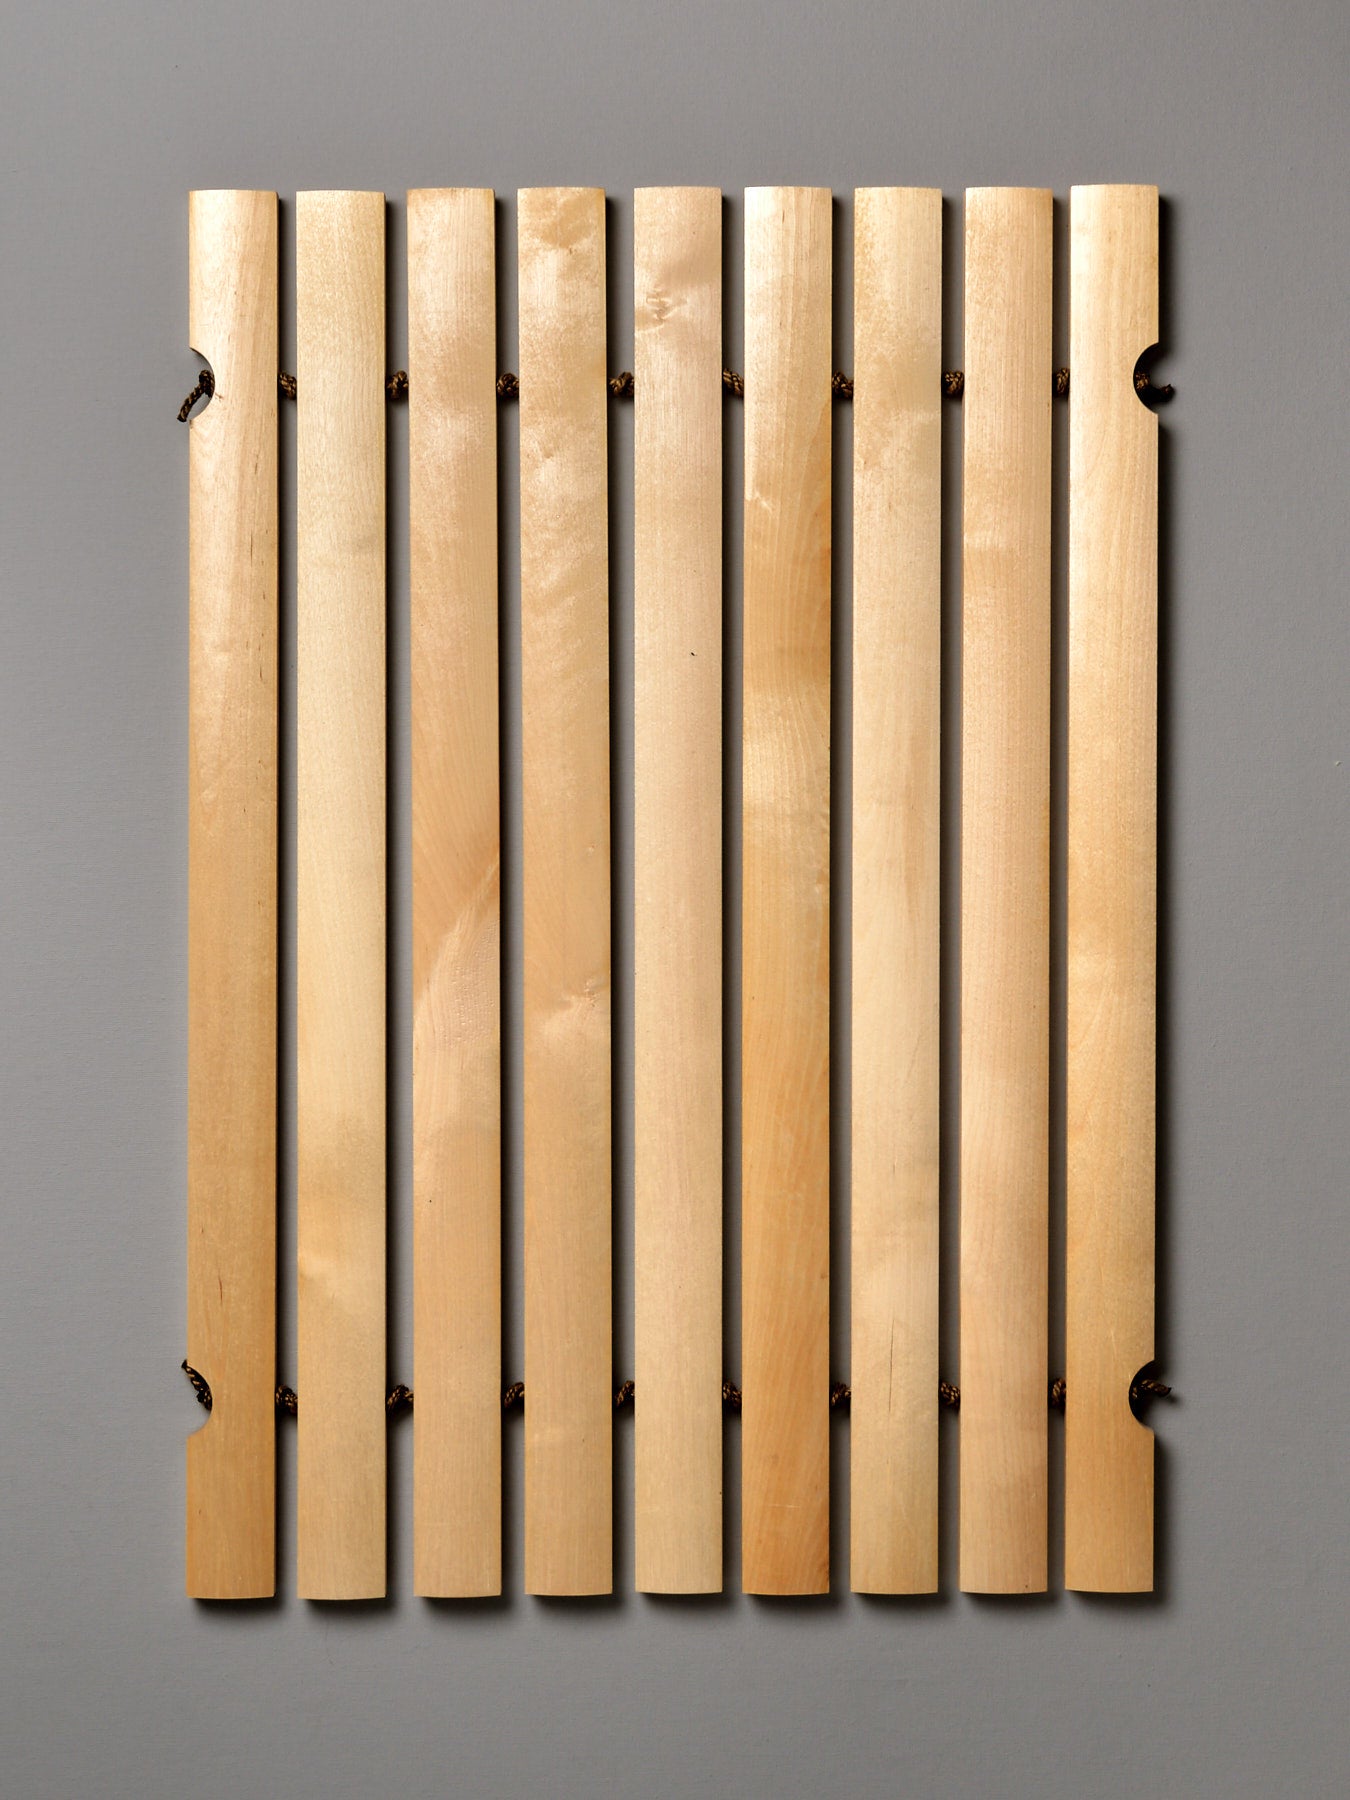 An Iris Hantverk Bathroom Mat with four wooden strips on a gray background.